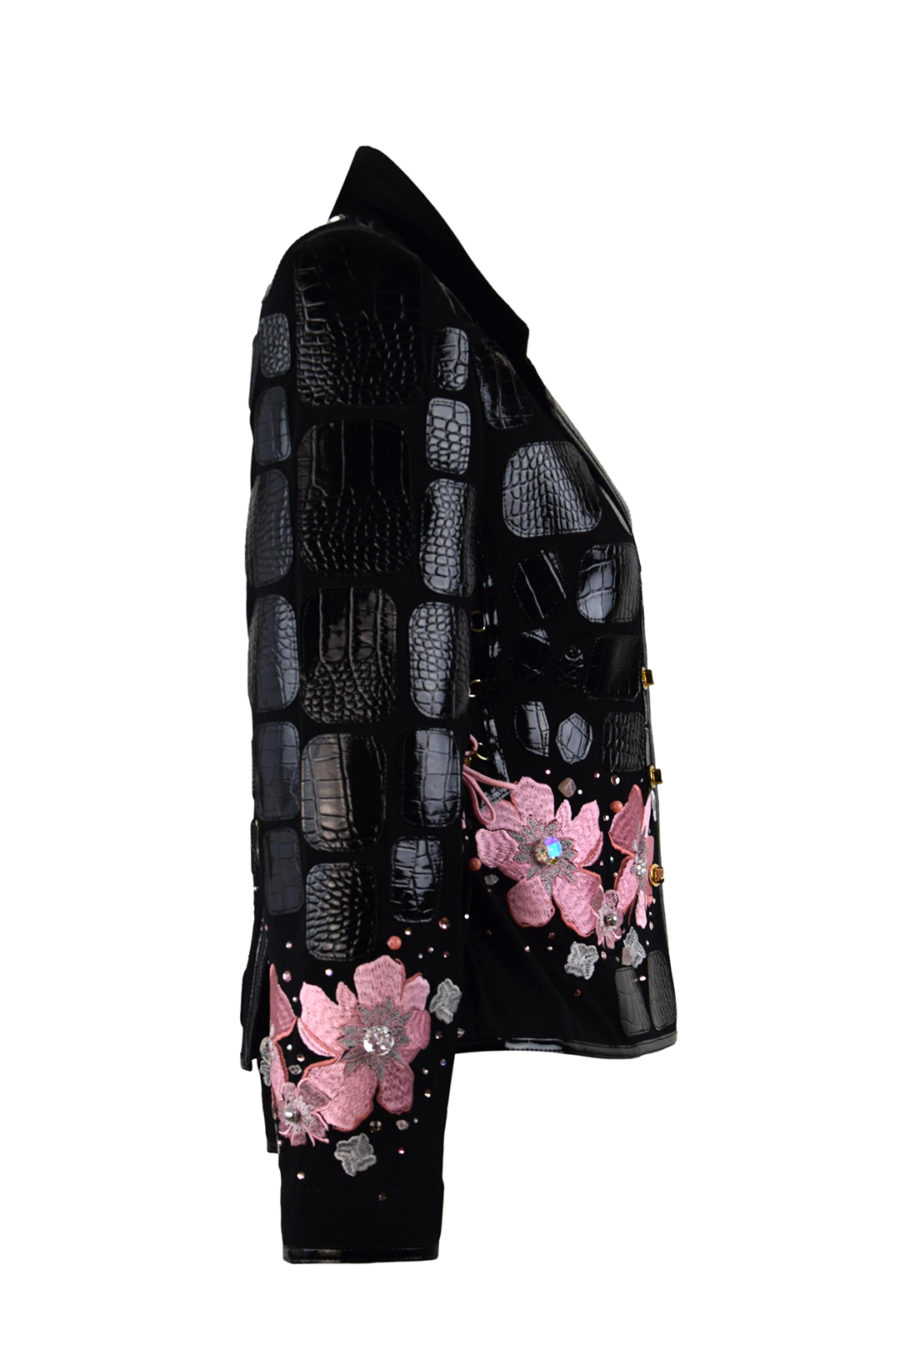 Couture- Jacke mit "lace-embroidery"- 6 Motive, 250 handapplizierten Kristallen und Natursteinen, Lederpatches in Kroko-Optik